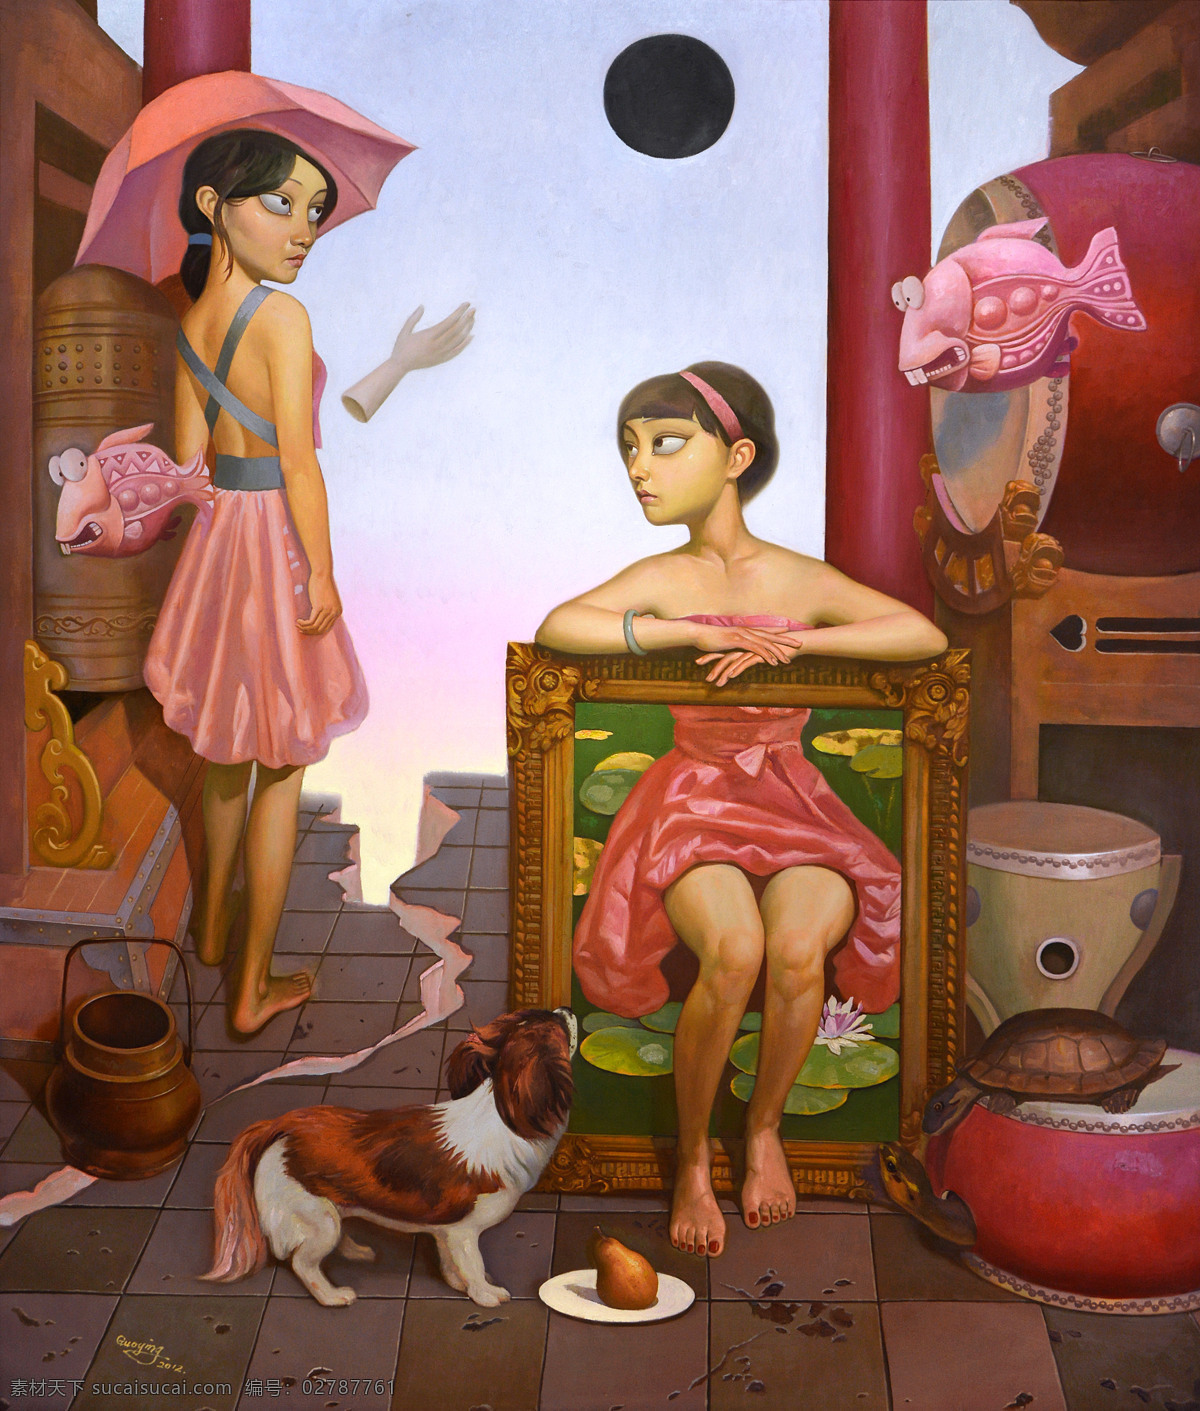 油画 吴国英作品 小女 人物油画 超现实主义 当代油画 当代艺术 文化艺术 绘画书法 中国当代绘画